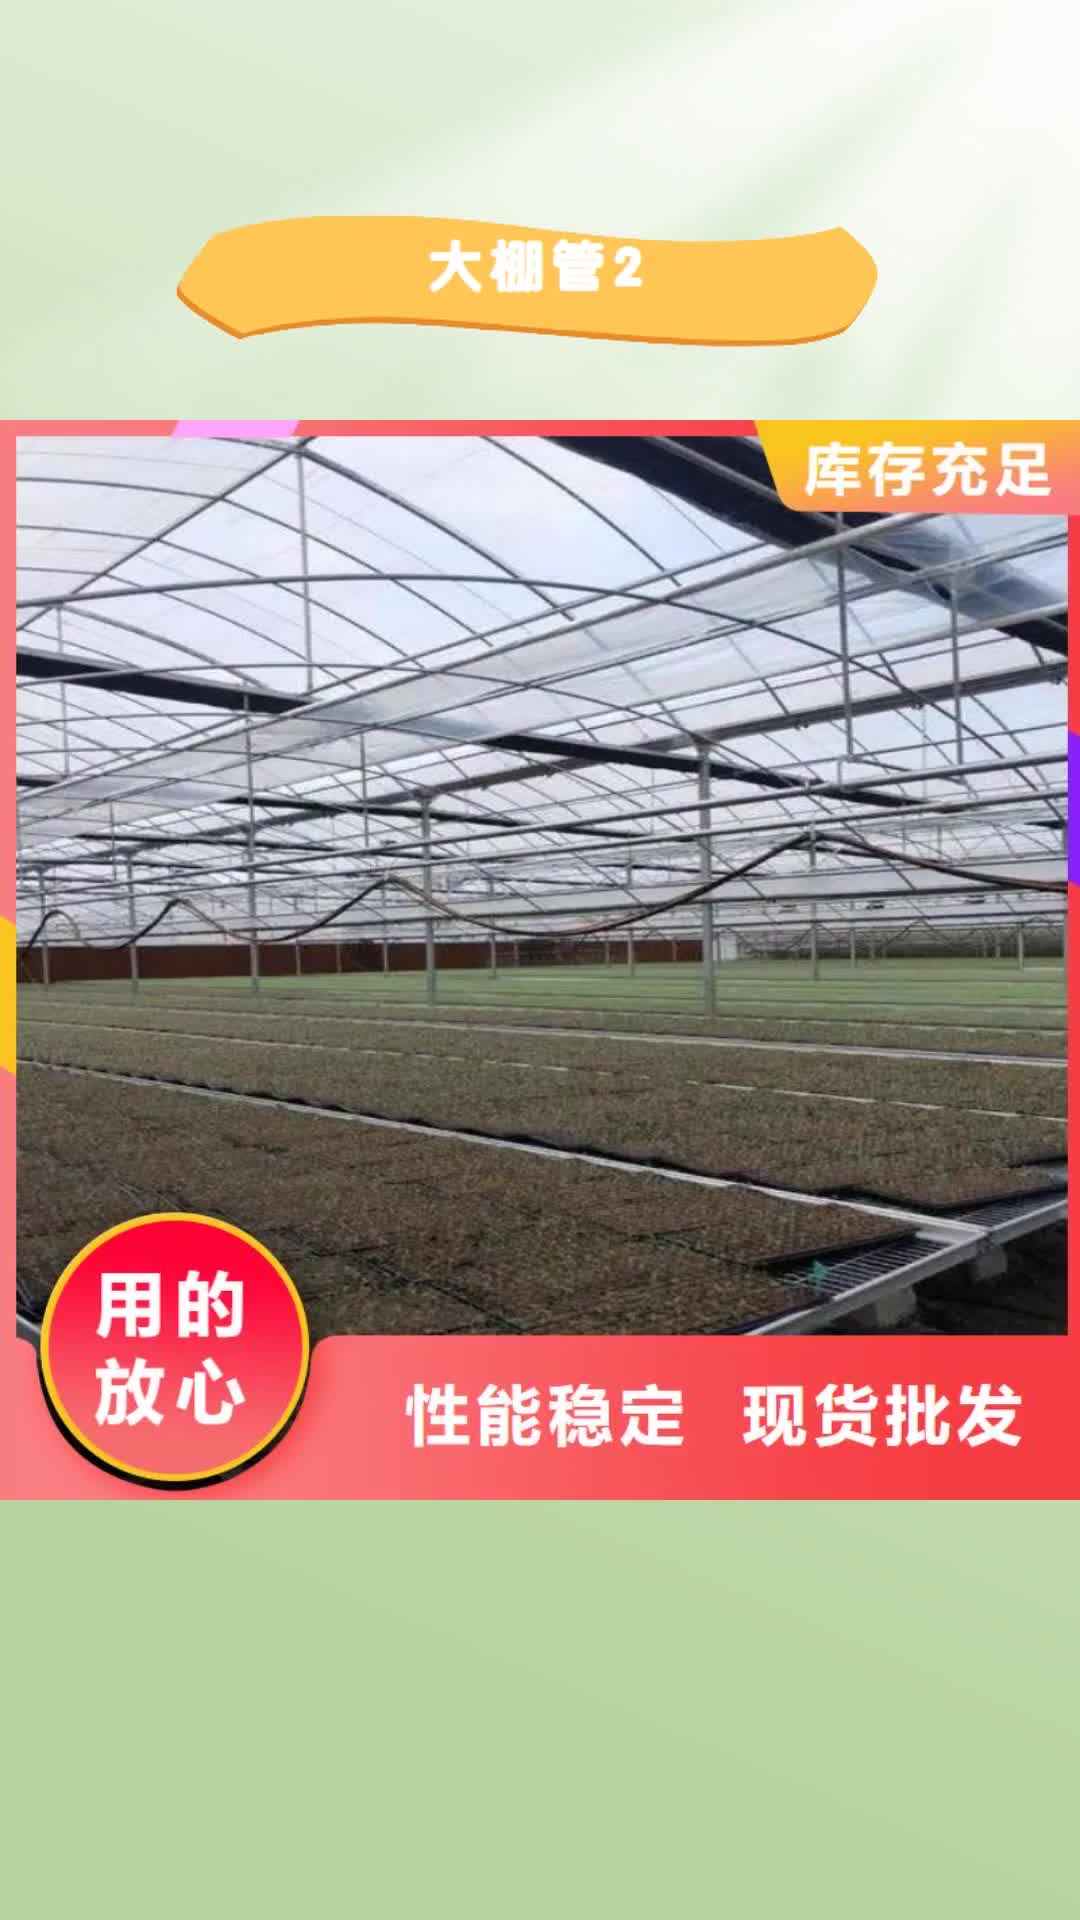 宁夏【大棚管2】,
蔬菜温室大棚管专注生产制造多年